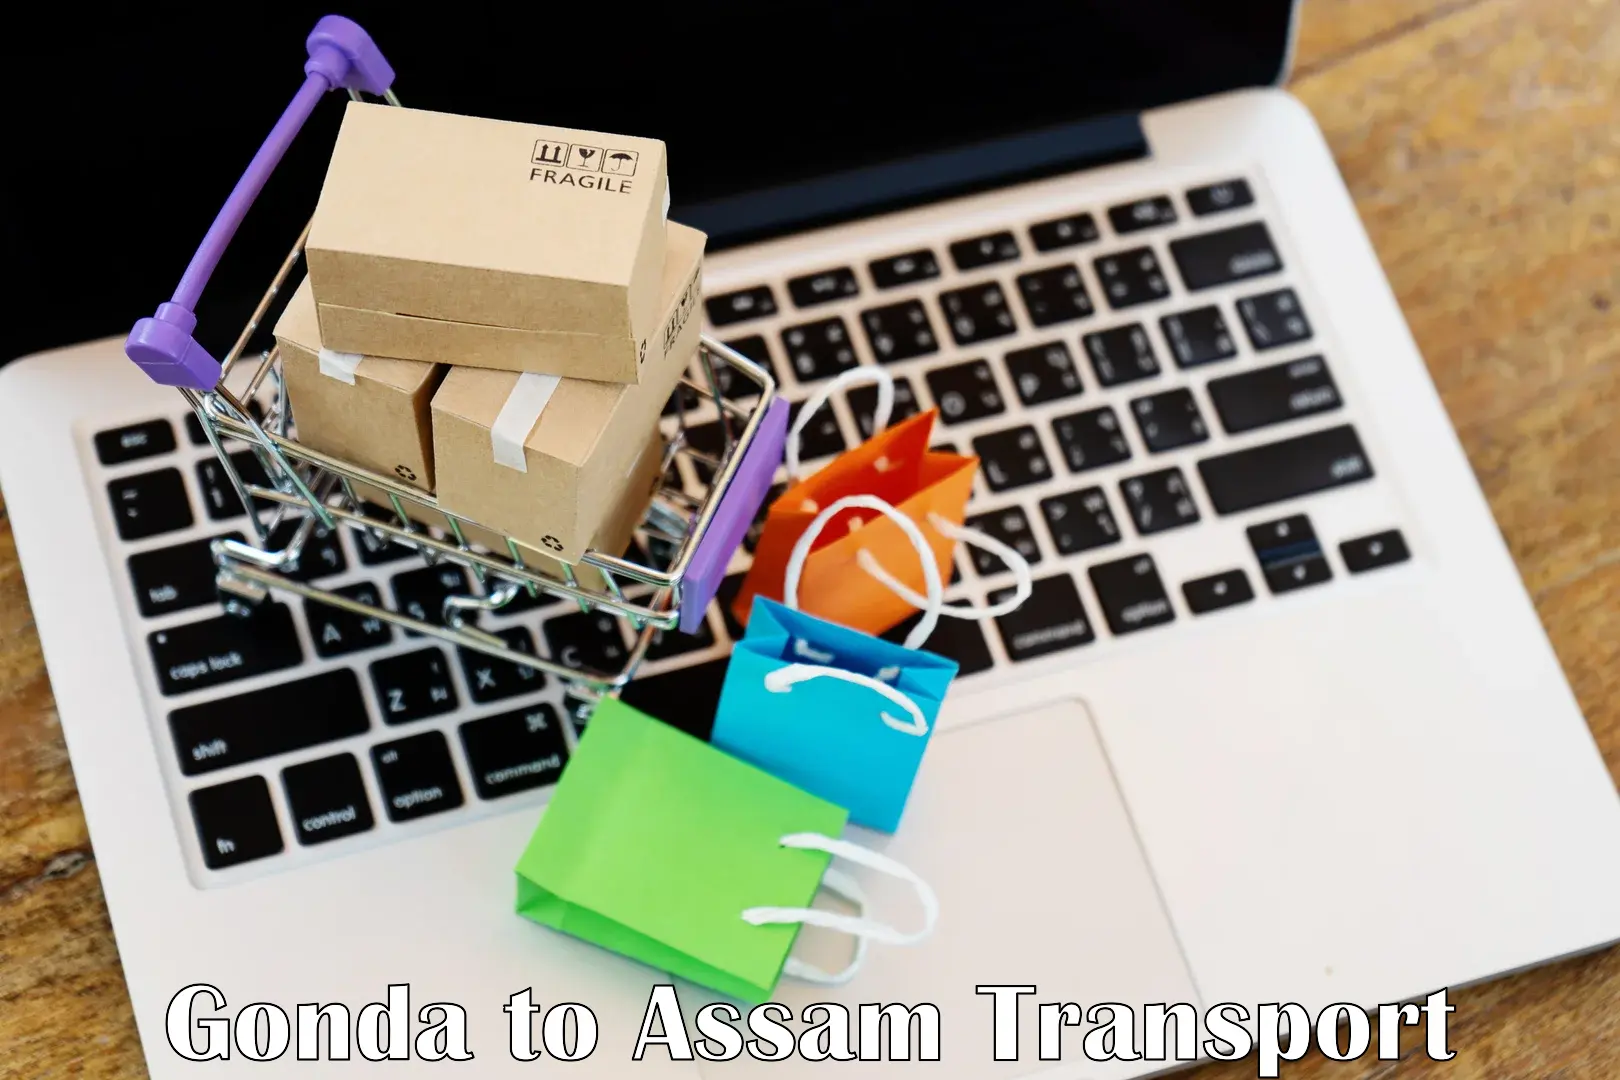 Shipping partner Gonda to Baksha Bodoland